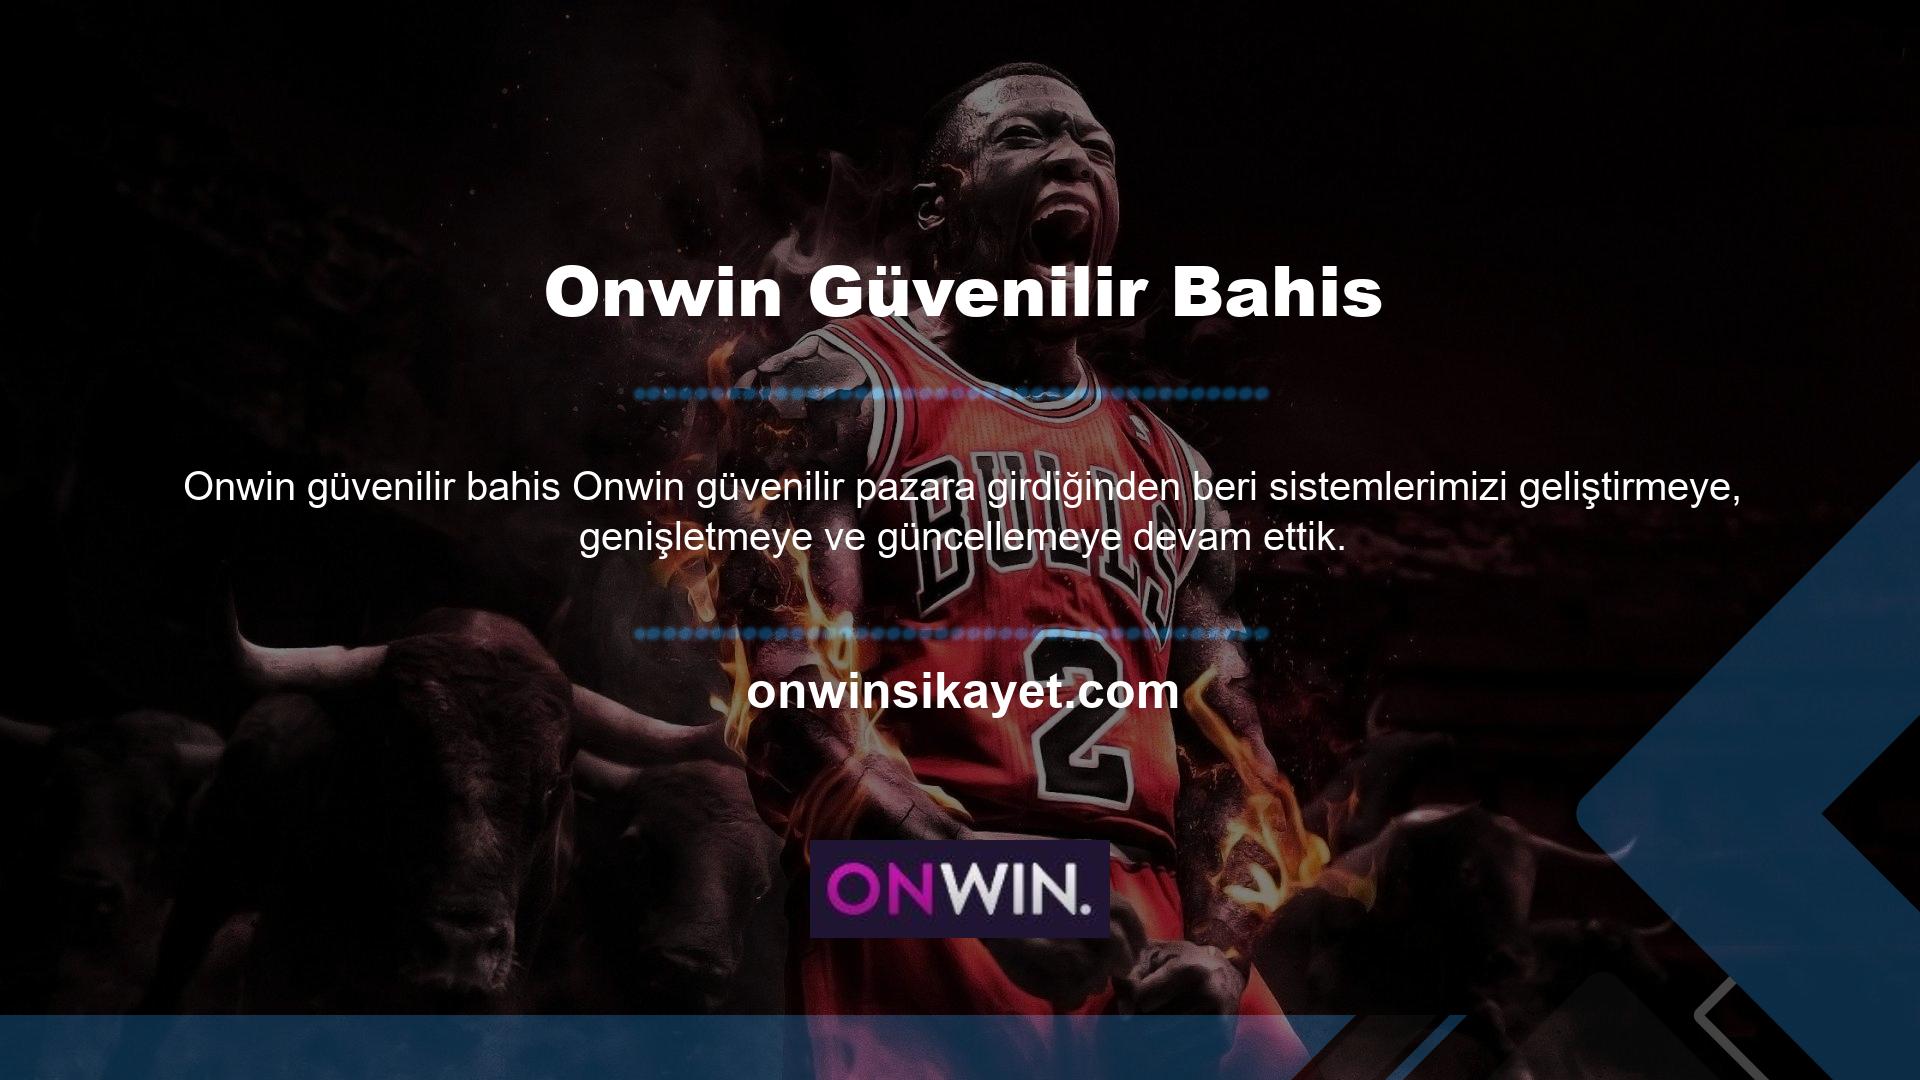 Kullanıcılara daha güvenilir bir sistem sunmak amacıyla Onwin, sponsor olarak bahisçilerin daha önce denemediği sistemleri geliştirip denemekte, kullanıcıların kazançlarının güvenliğini sağlamak amacıyla Onwin giriş sayfası ve 3D şifreleme sistemi geliştirmiştir